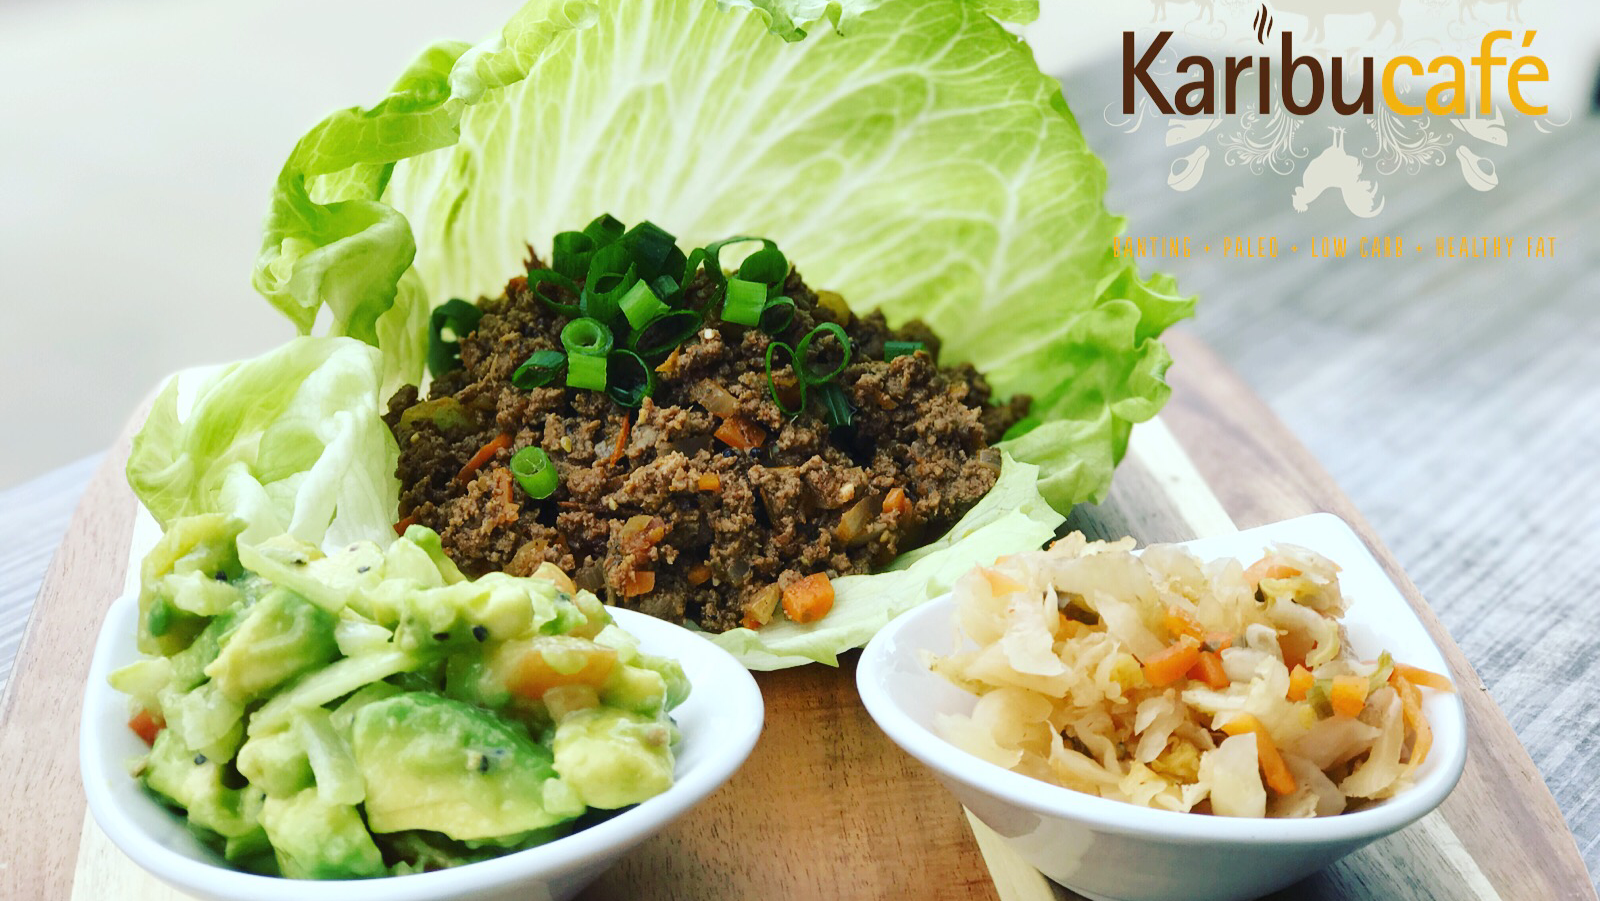 Image for Karibu Cafe